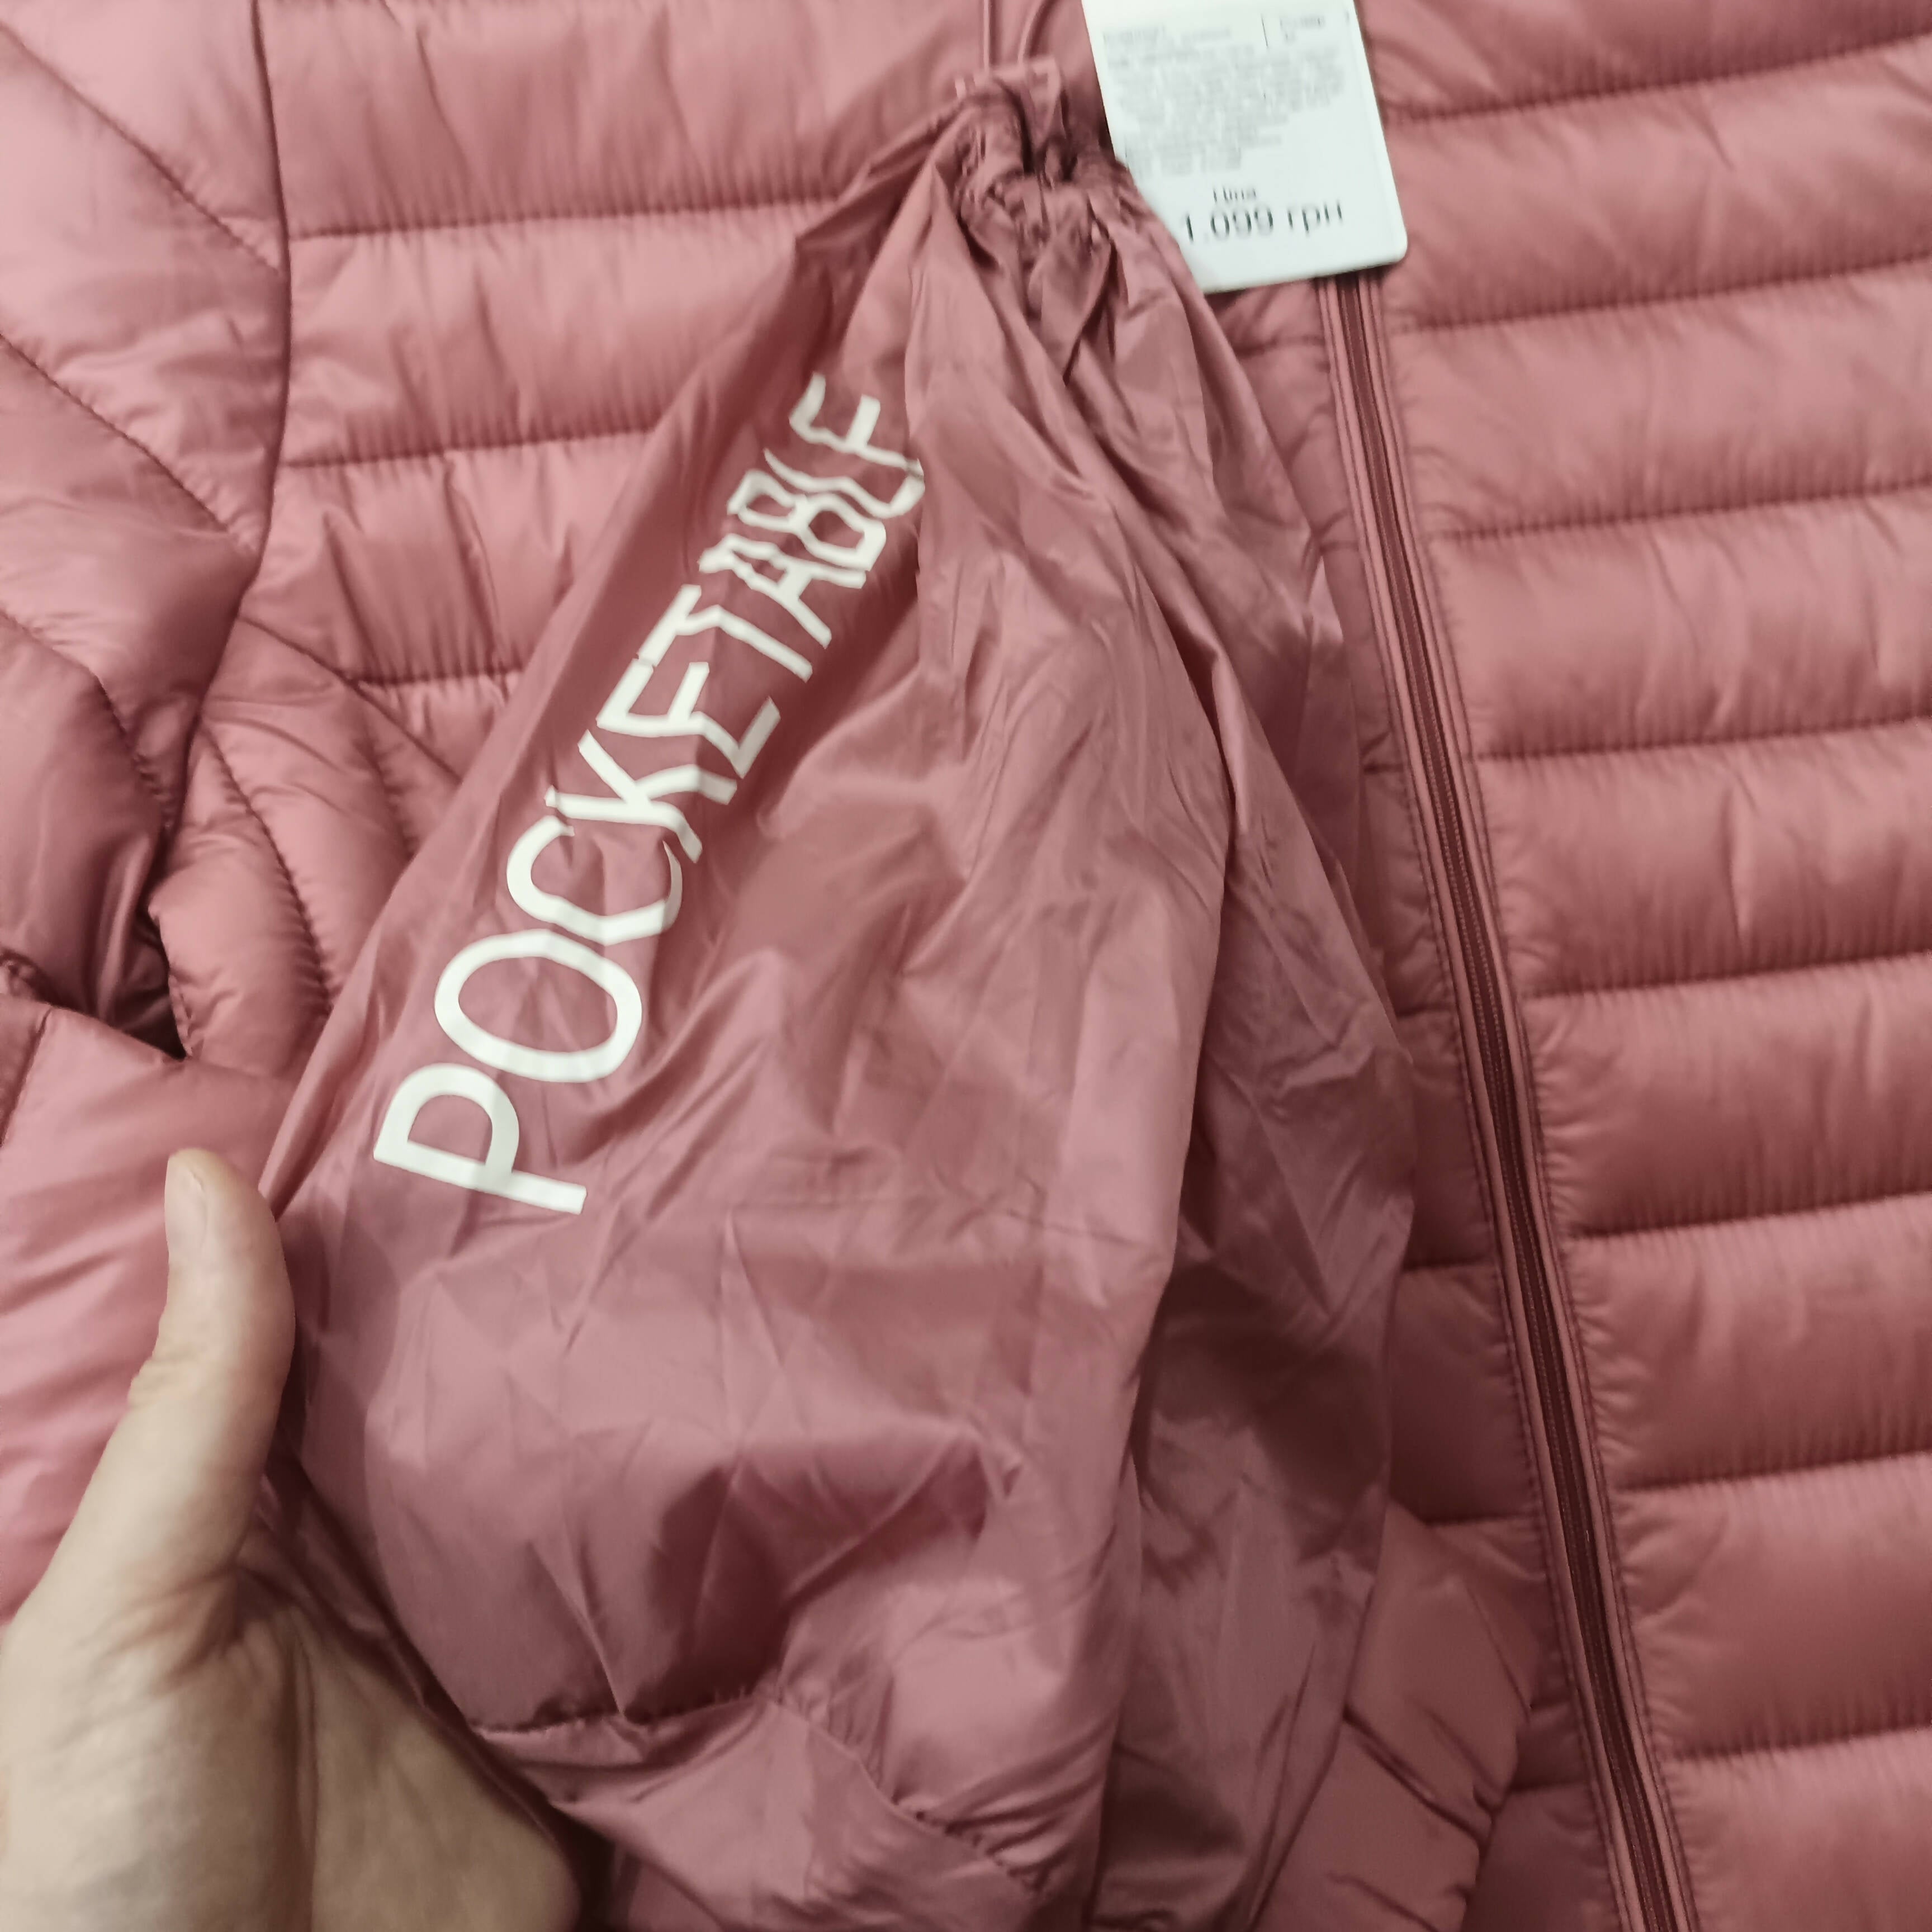 Pink Puffer Jacket | Women Jackets & Coats | Brand New